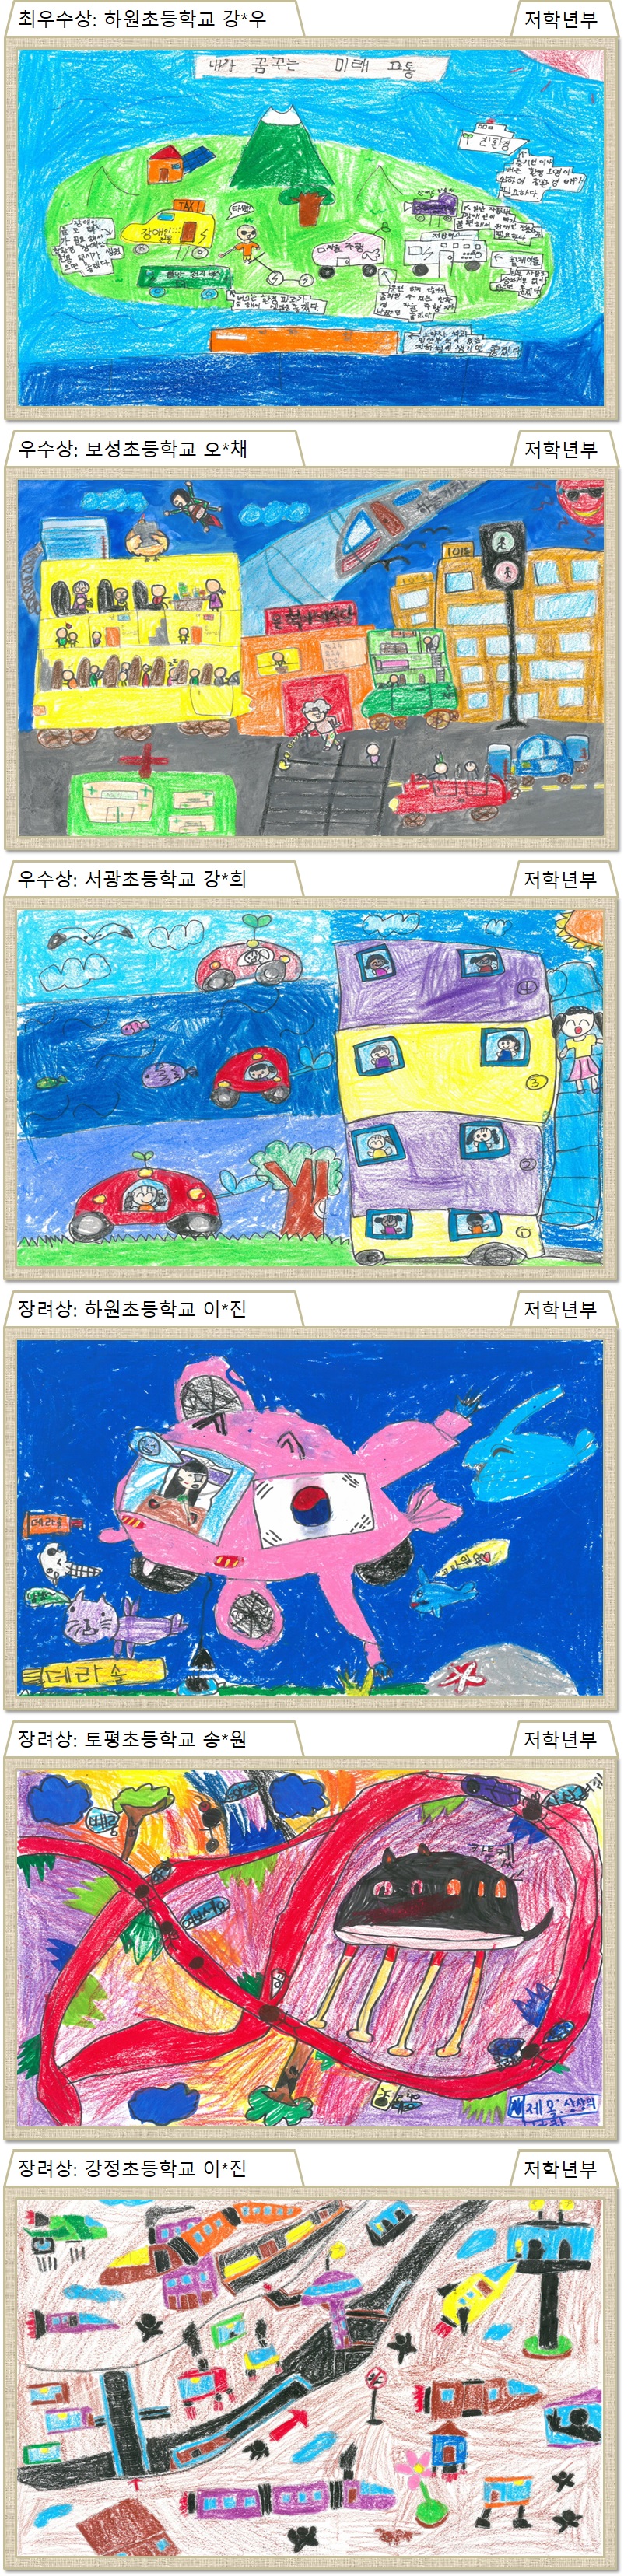 제7회 국토교통인재개발원 어린이 그림 공모전 수상작품(저학년)